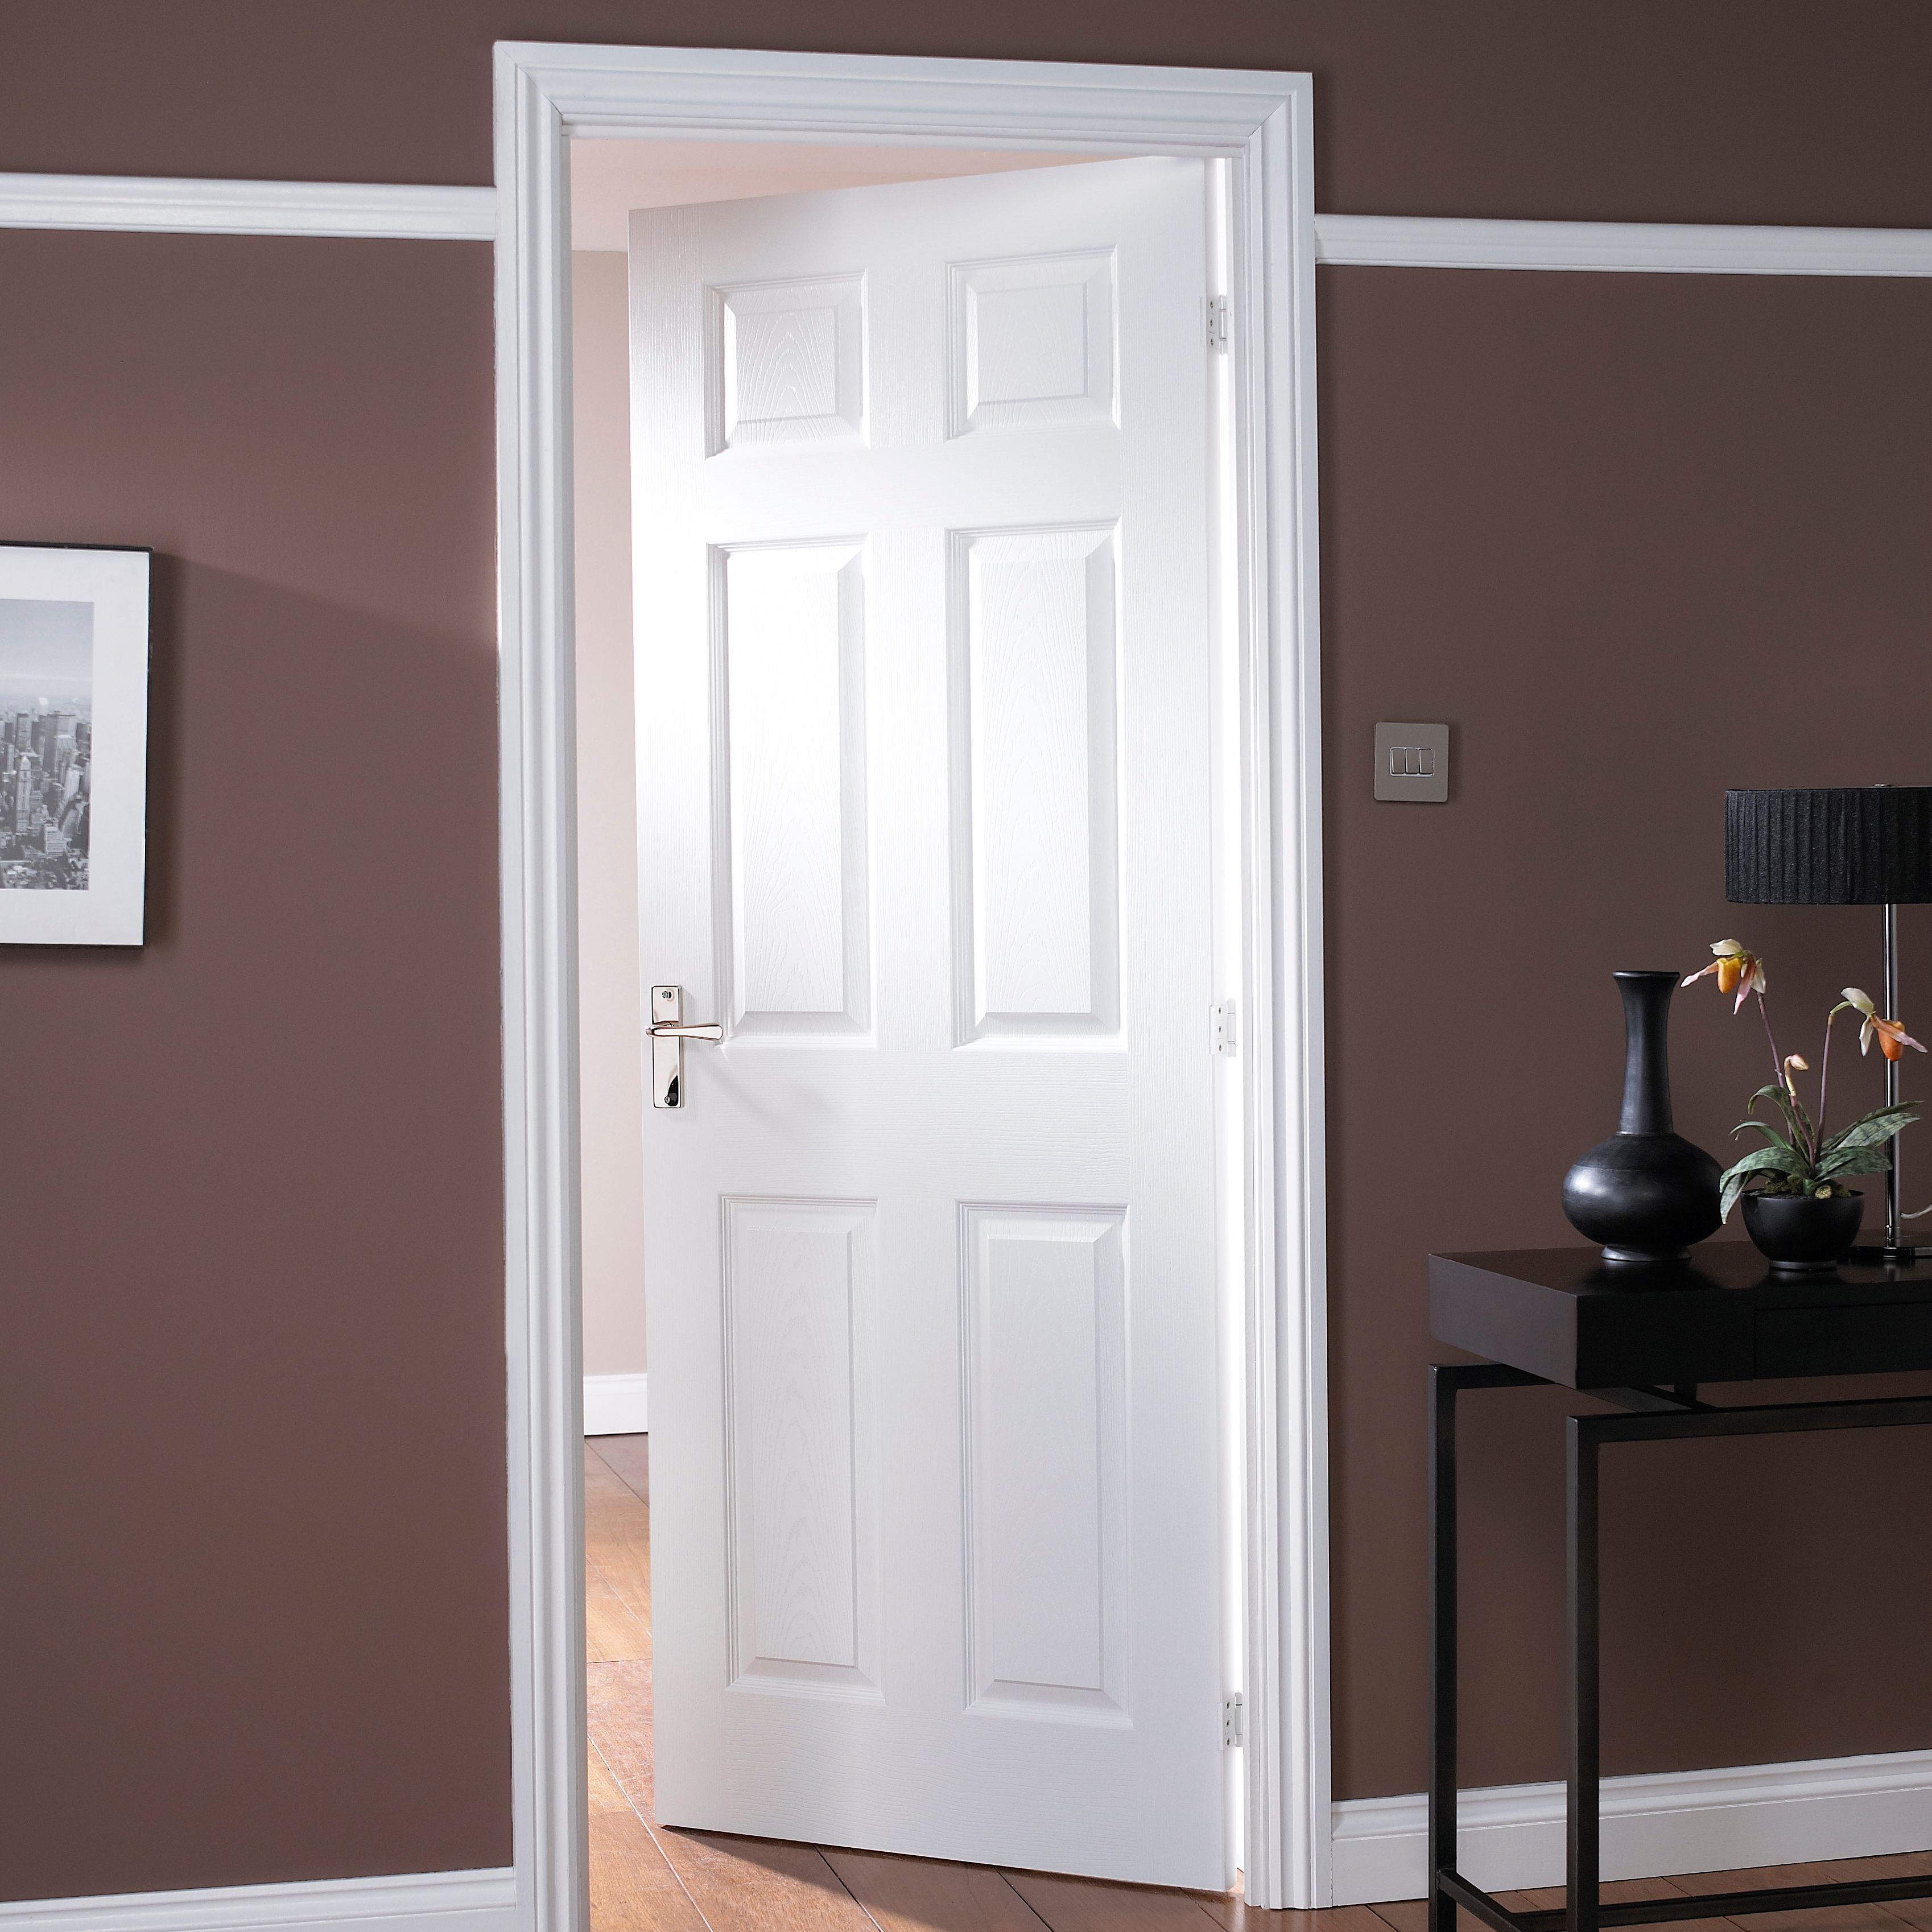 Easy fit 6 panel White Adjustable Internal Door & frame set, (H)1988mm-1996mm (W)759mm-771mm